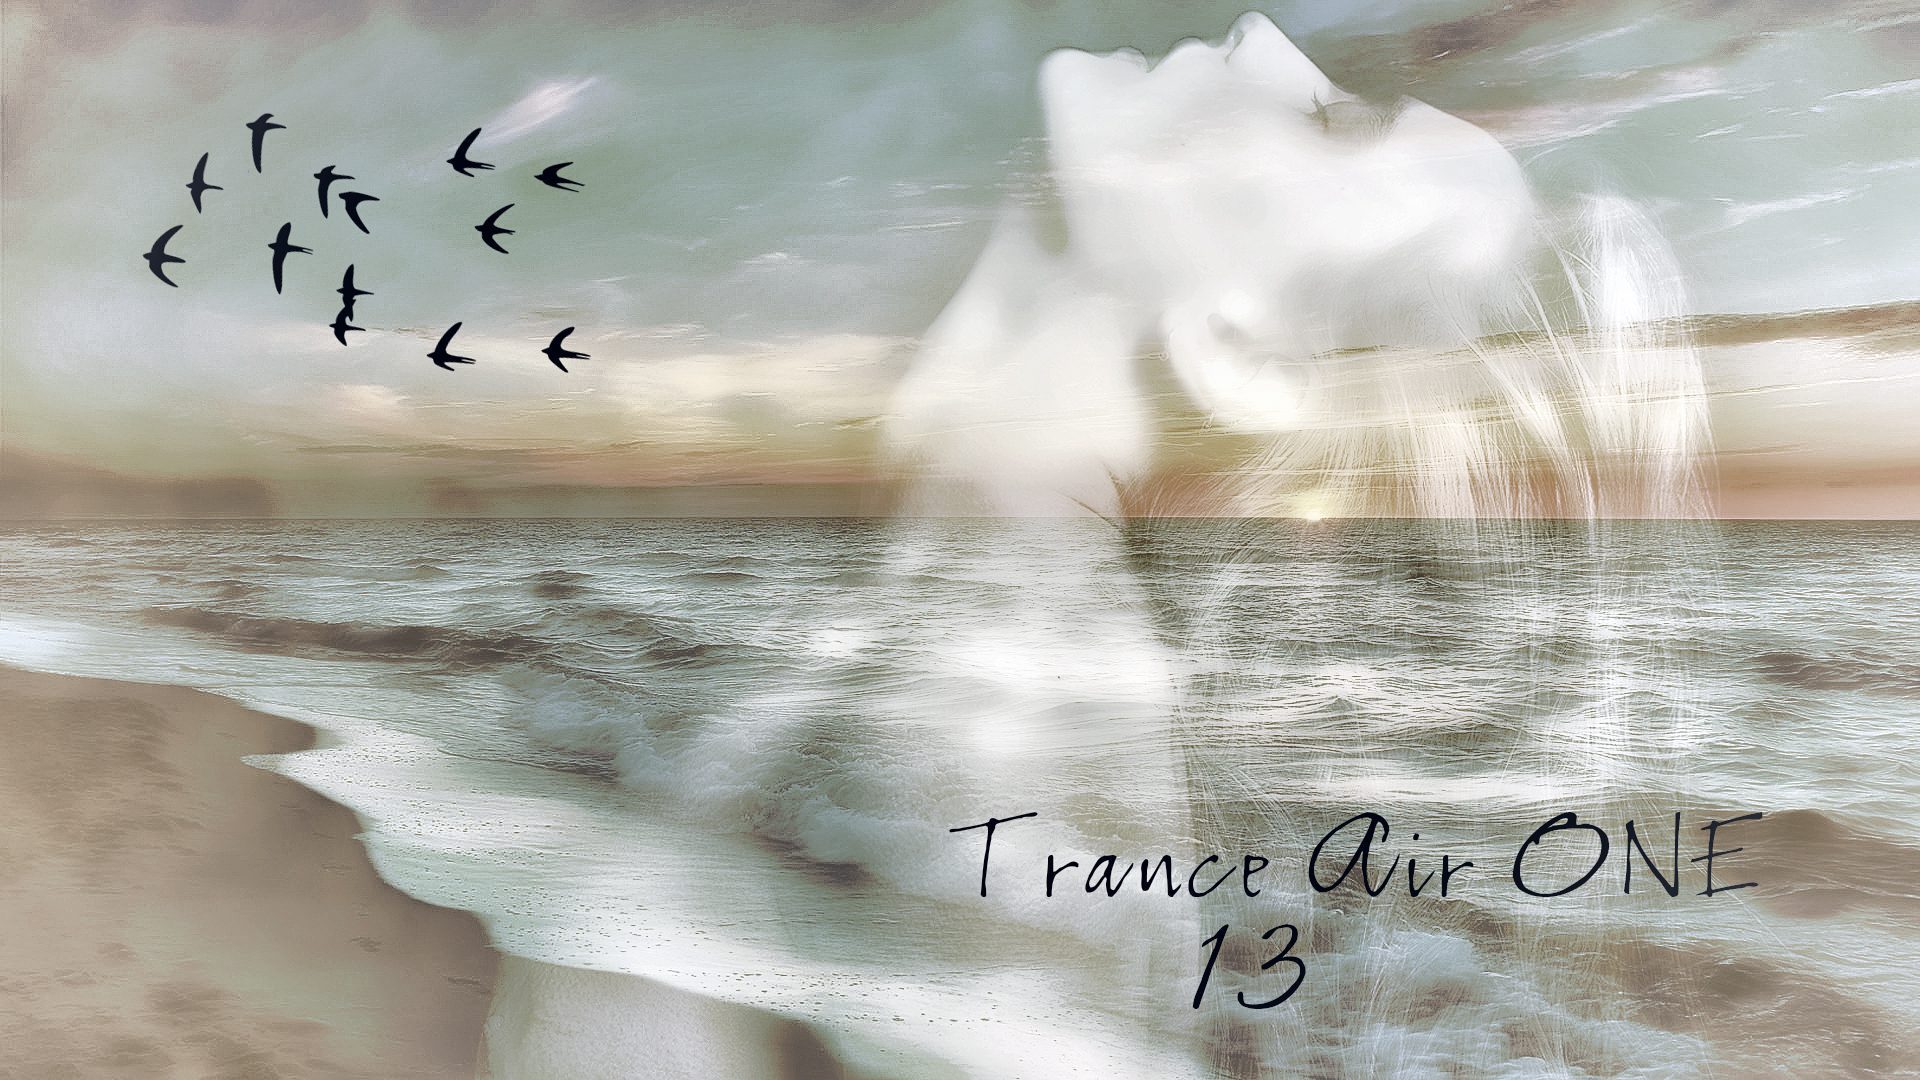 Trance Air ONE 13.